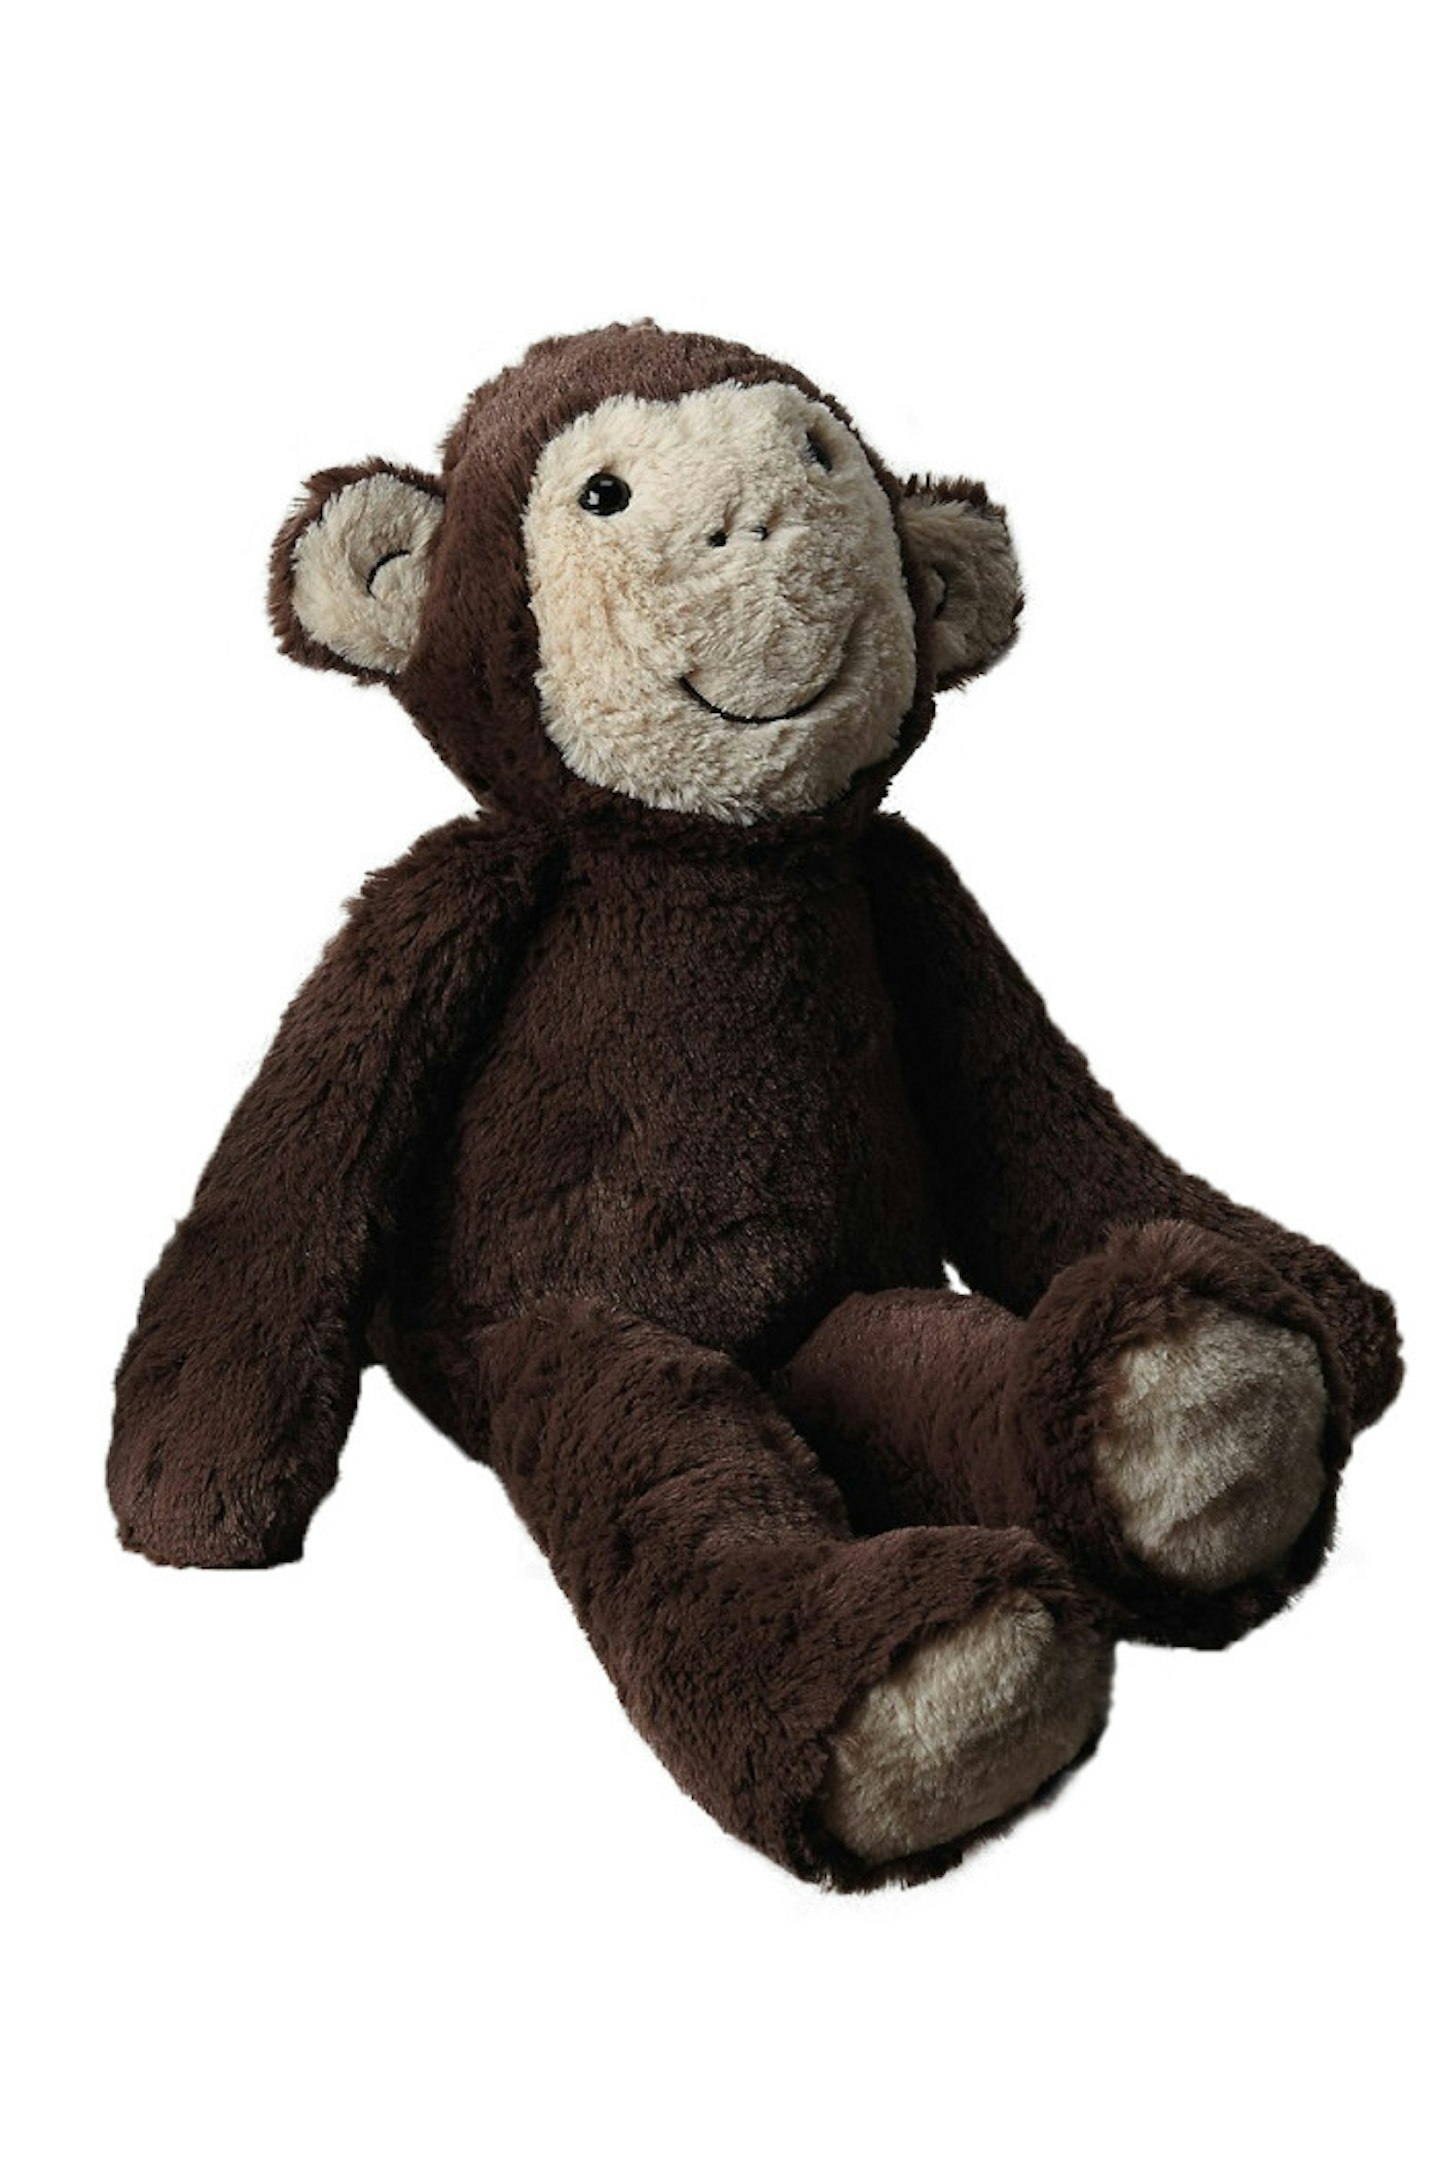 2. Ronnie Medium Monkey, £20, www.thewhitecompany.com